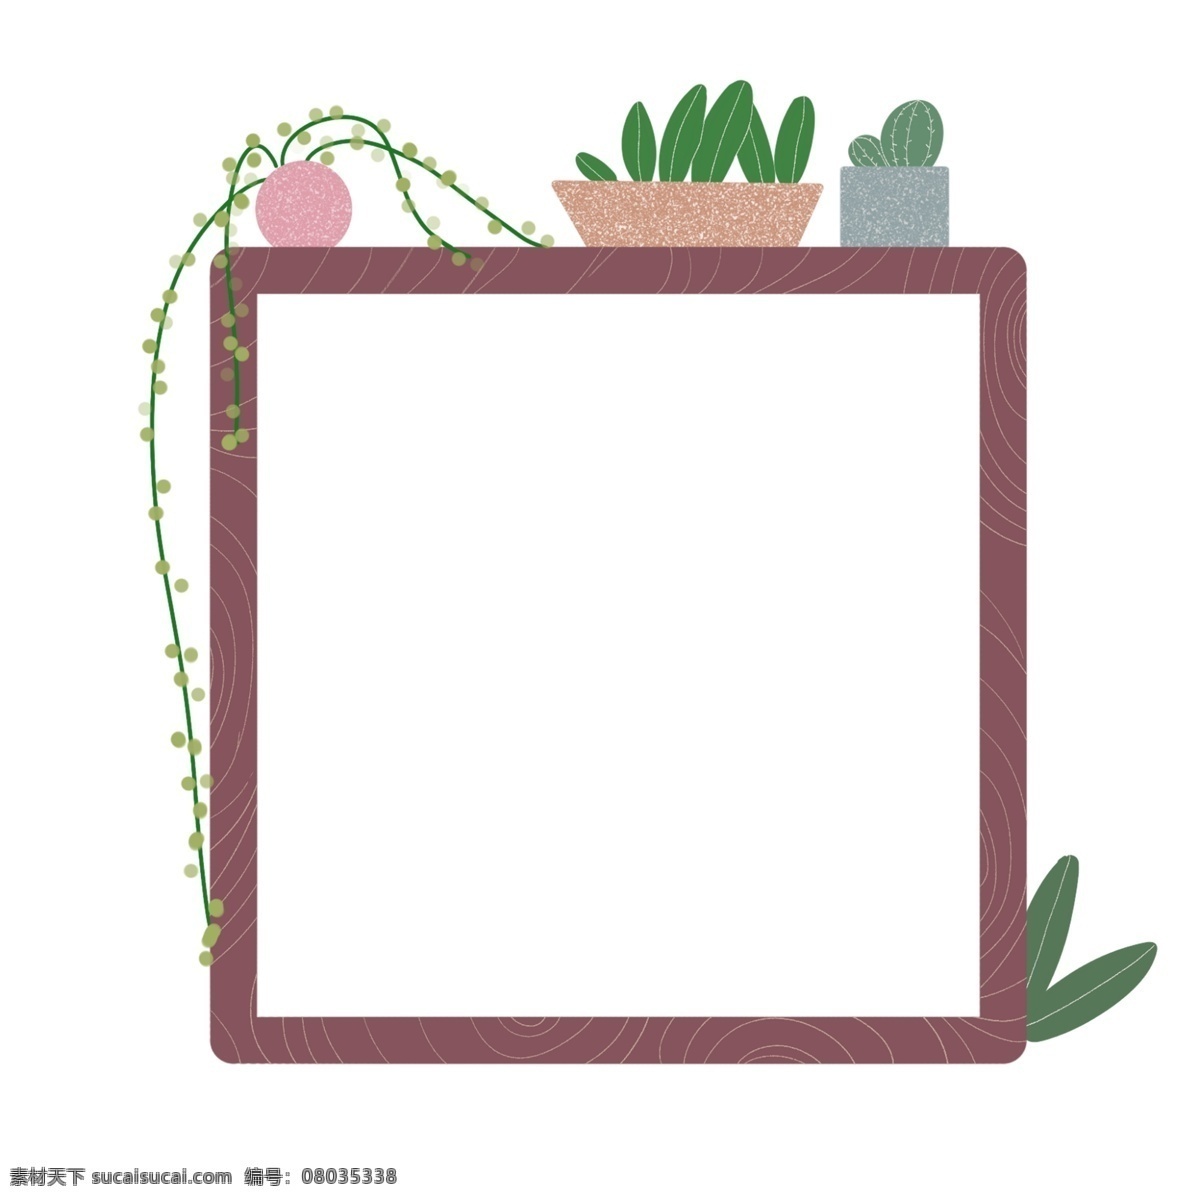 植物 盆栽 边框 插画 仙人掌边框 二维码 方形 花卉边框底纹 棕色底纹边框 边框插画 绿色植物边框